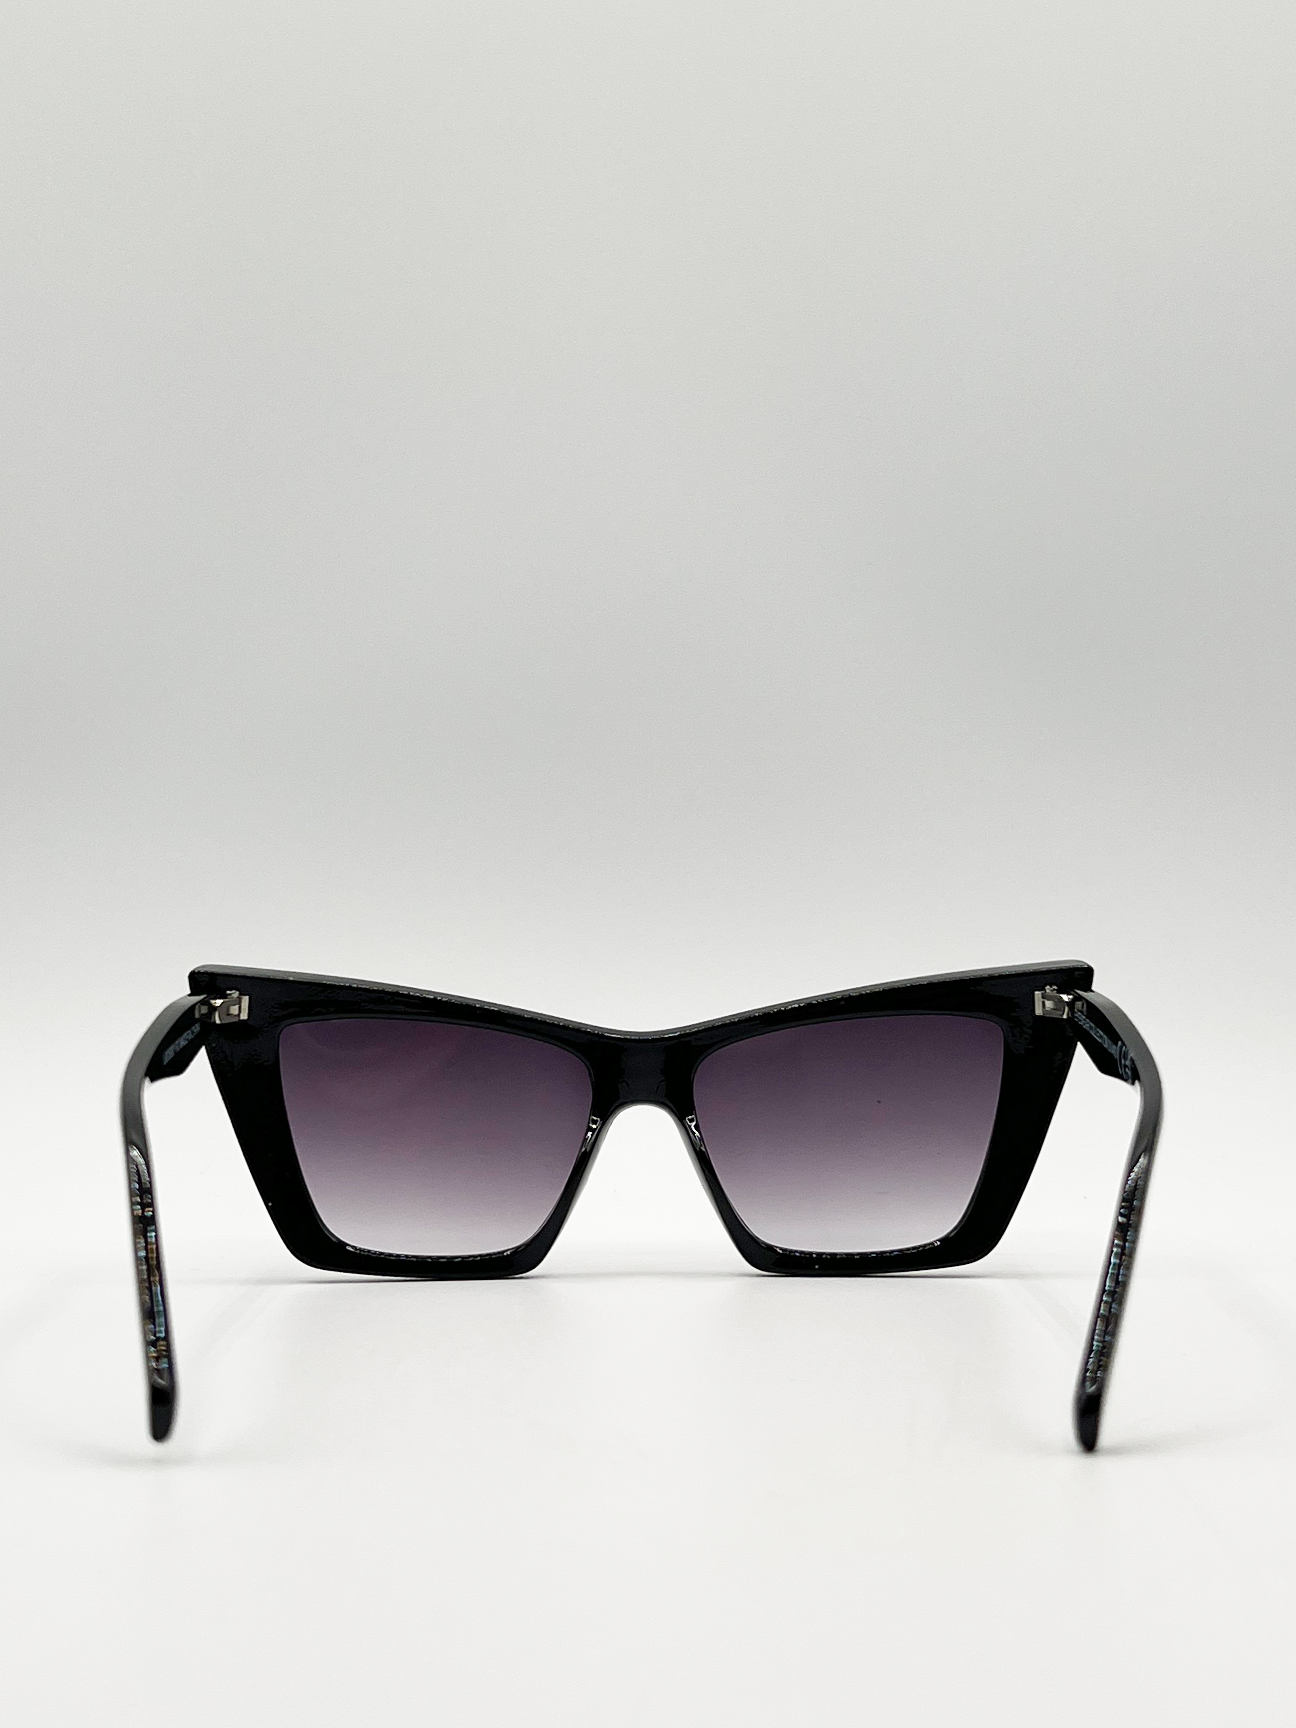 Oversized angular cateye sunglasses